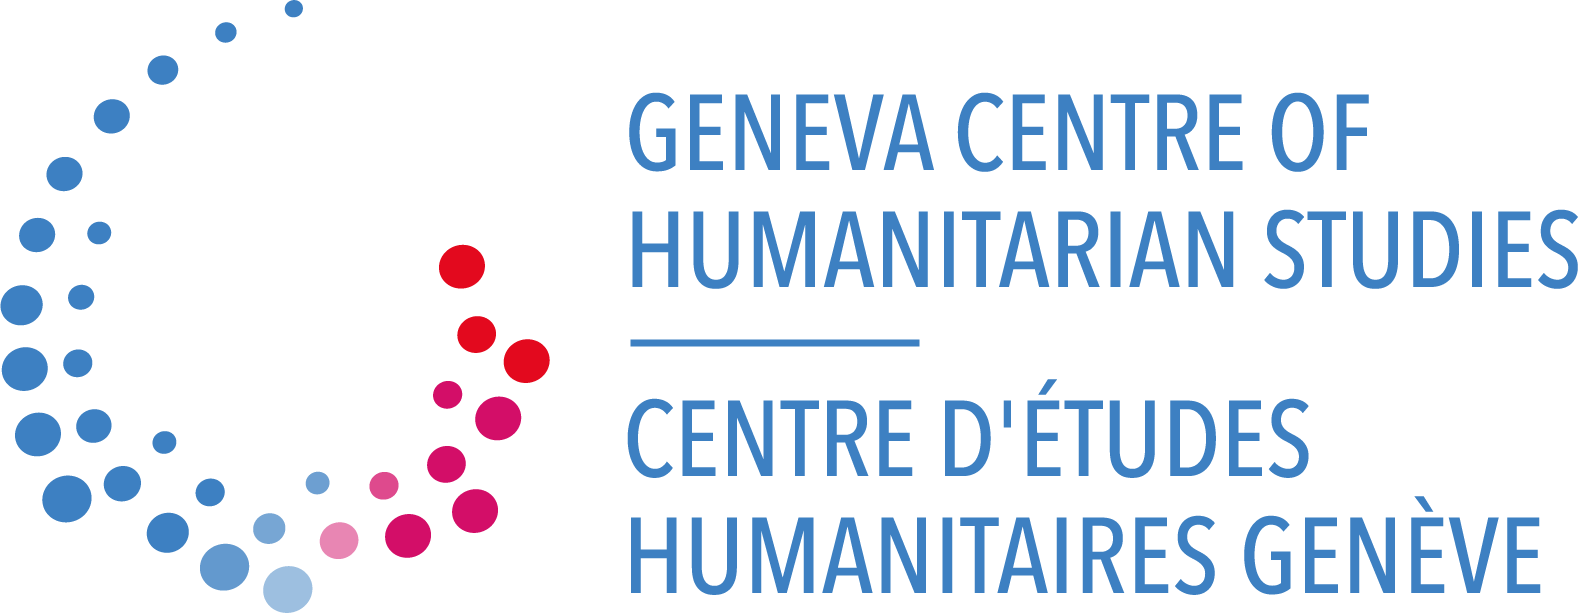 GVA Centre logo